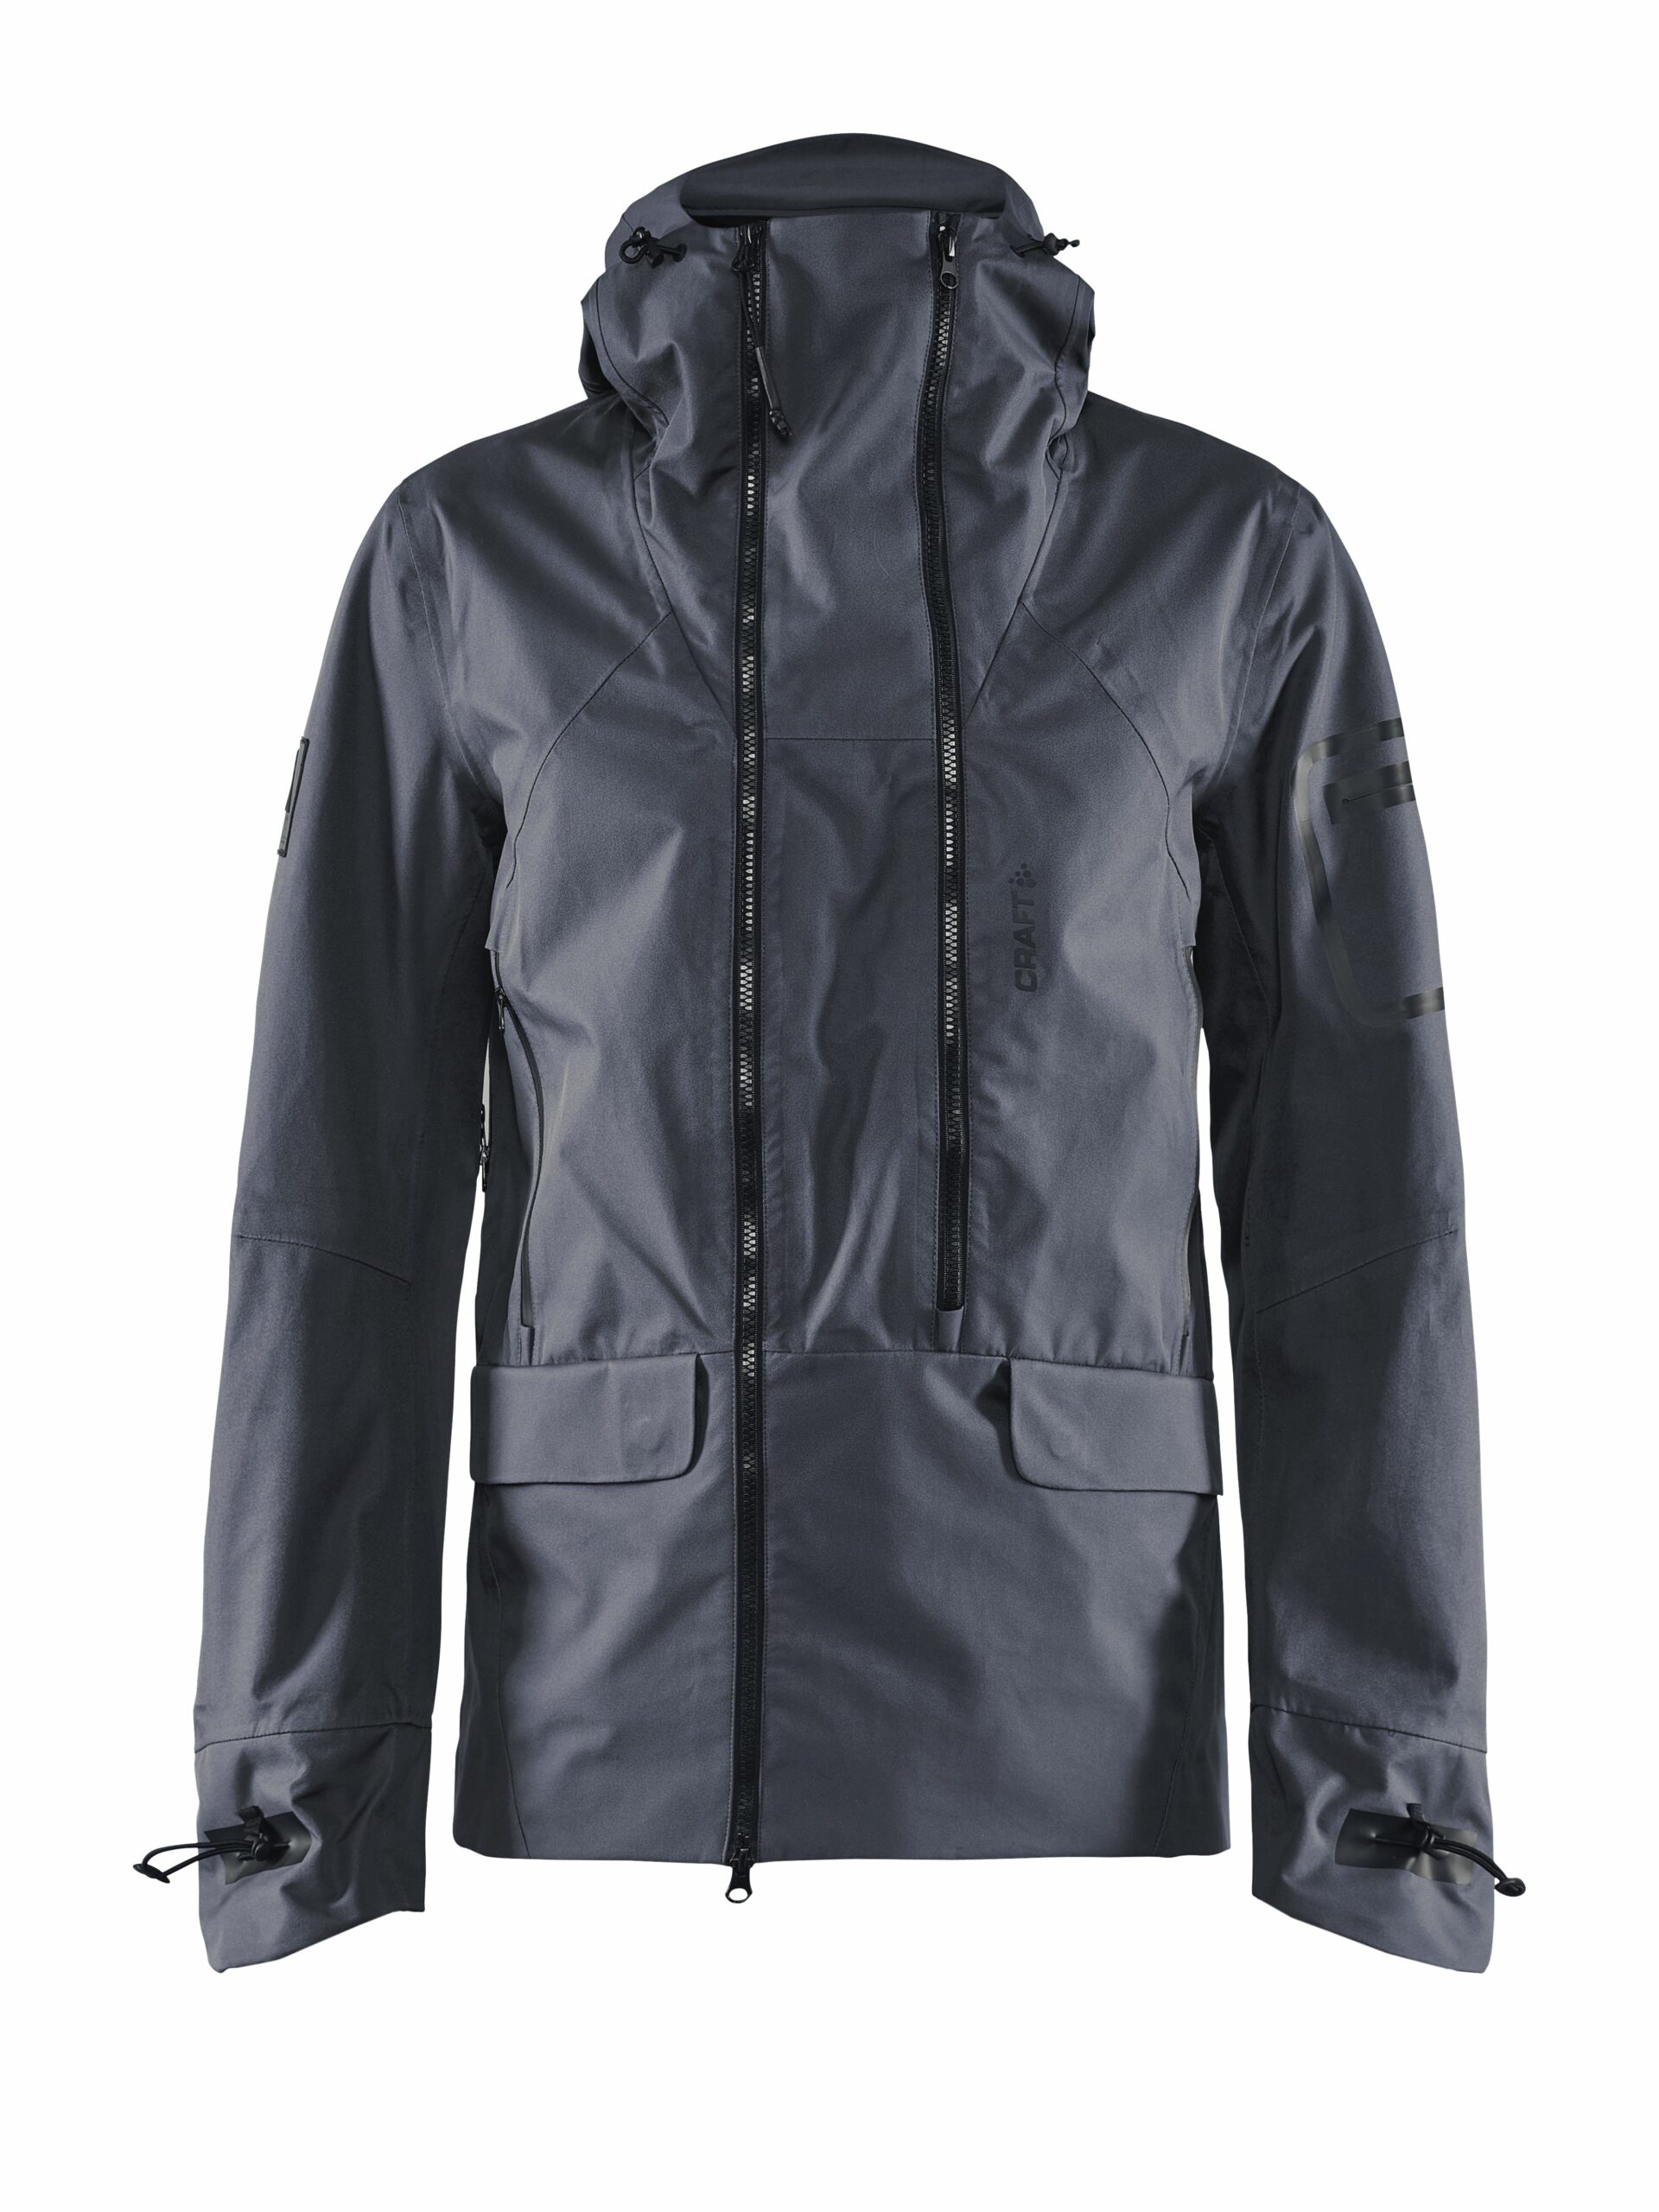 Craft - Polar shell jacket Maend - Asphalt XL